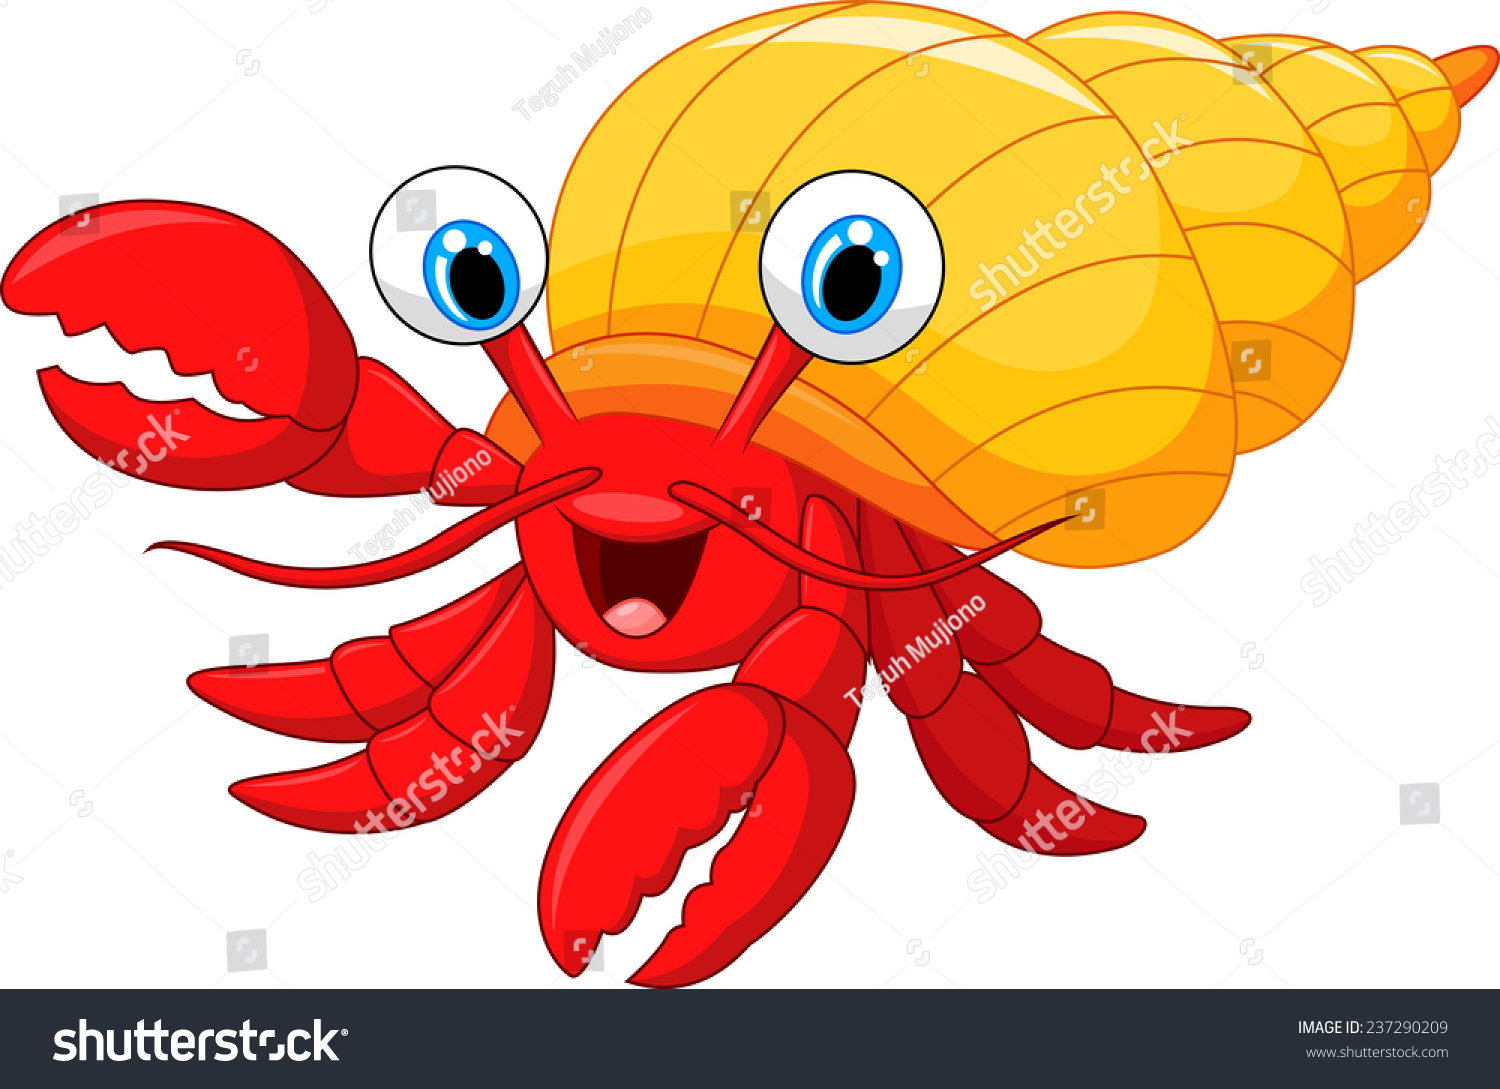 Cartoon Hermit Crab Stock Vector 237290209 - Shutterstock